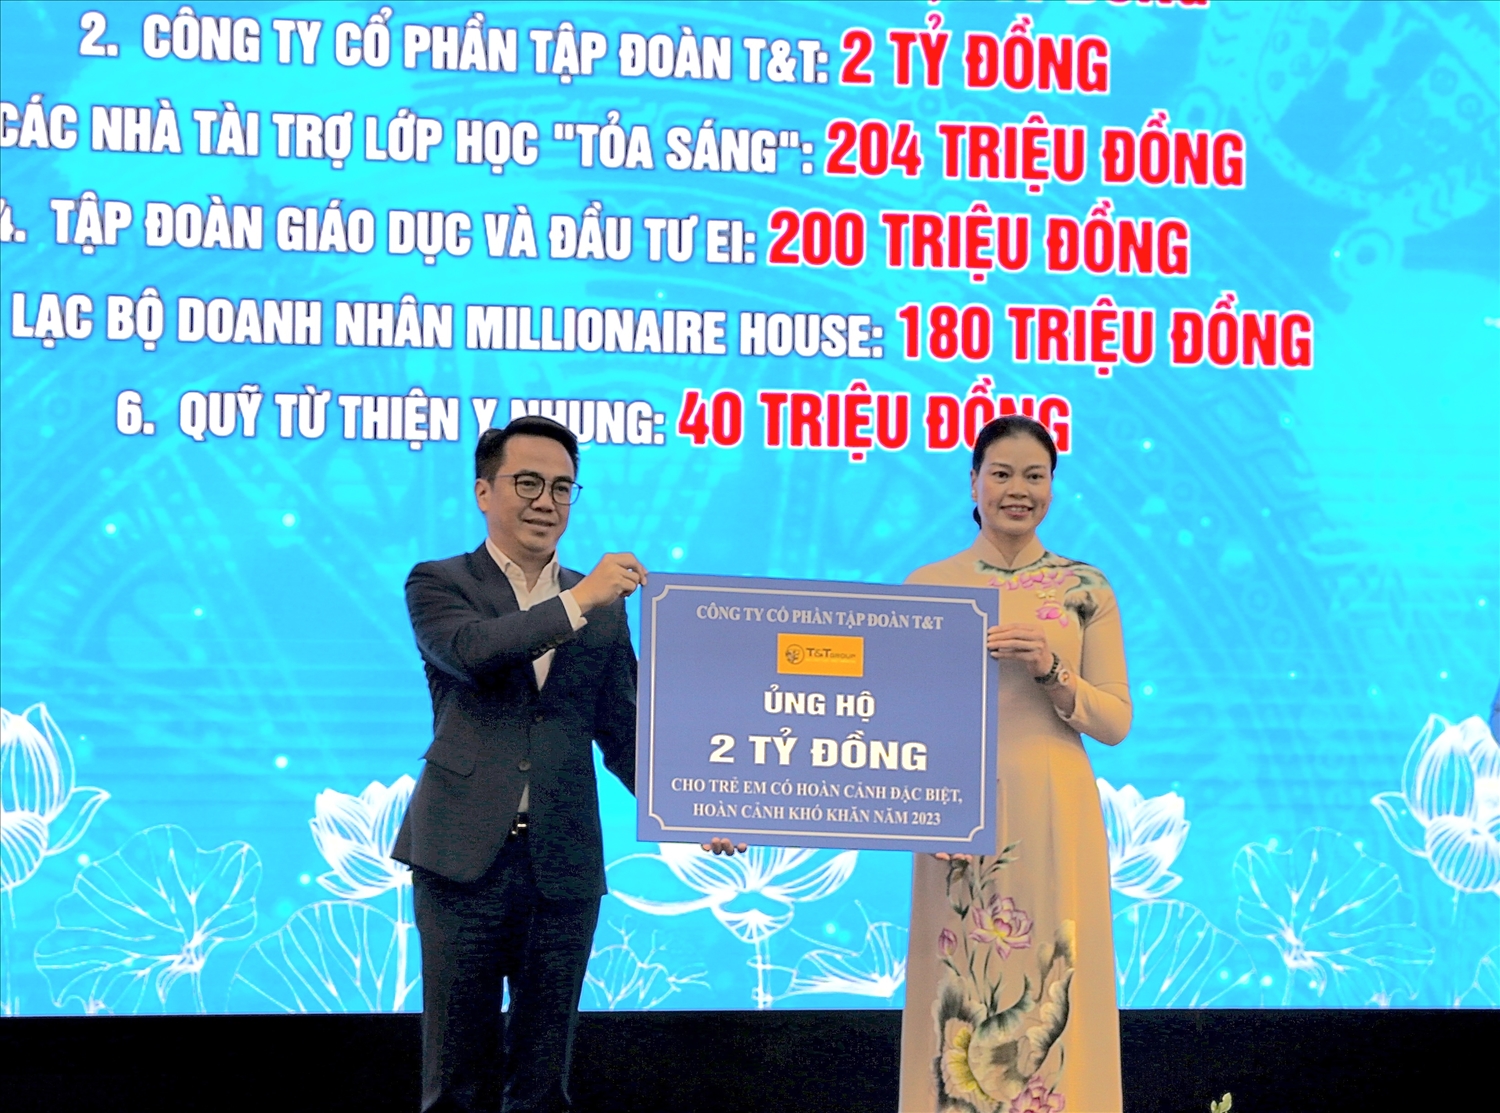 Đại diện lãnh đạo Tập đoàn T&T Group (trái) trao ủng hộ 2 tỷ đồng cho Trung tâm công tác xã hội và Quỹ bảo trợ trẻ em Hà Nội nhằm hỗ trợ trẻ em có hoàn cảnh đặc biệt, hoàn cảnh khó khăn